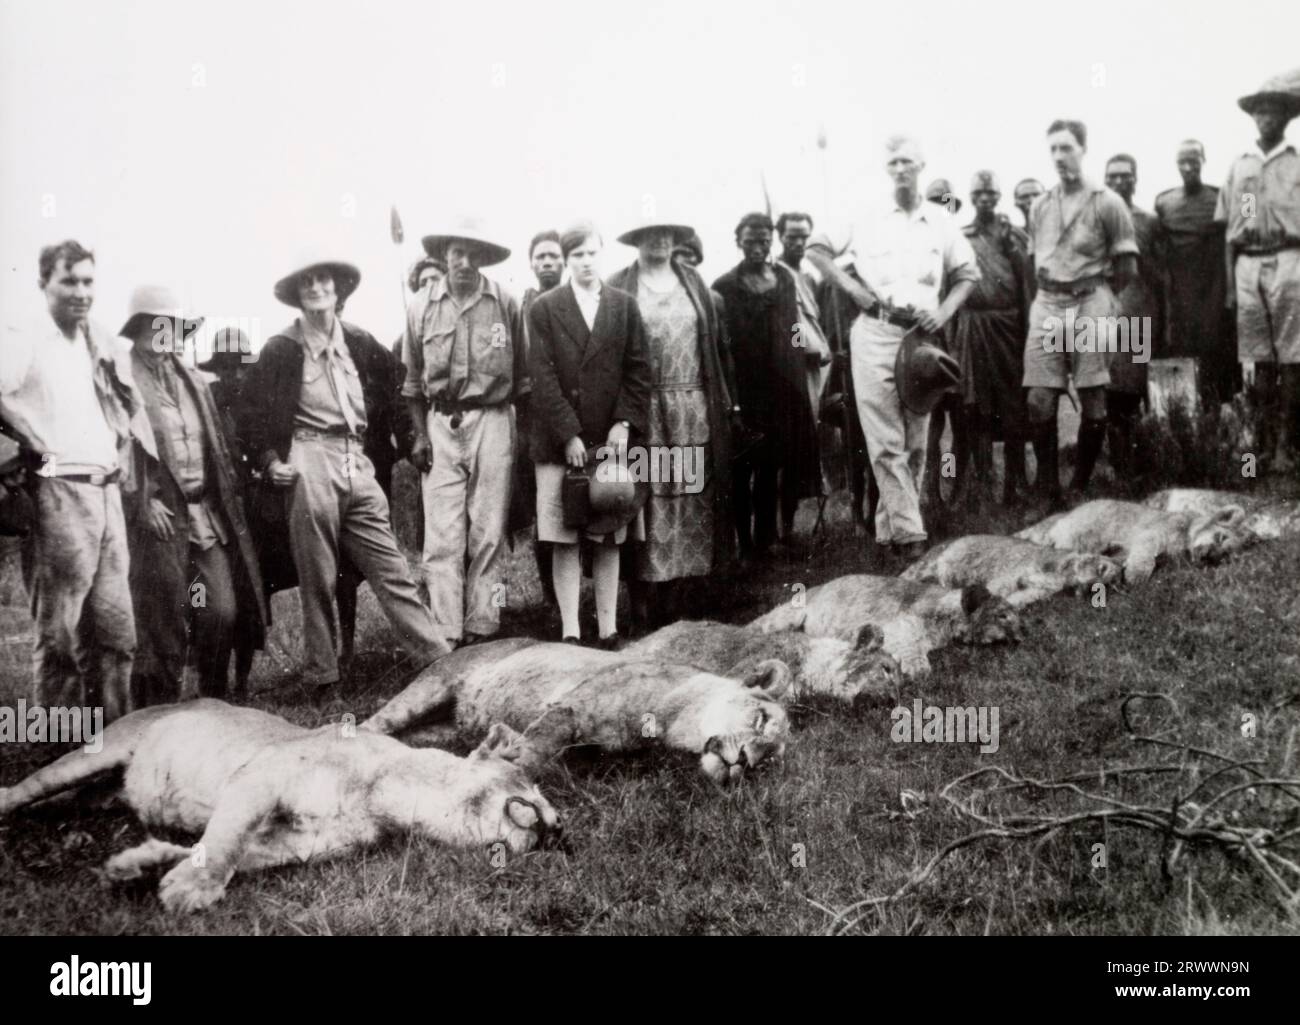 Diversi agricoltori europei e lavoratori agricoli africani si trovano sulle carcasse di sei leoni. Didascalia originale del manoscritto: Un gruppo di agricoltori con "sacco" di leoni che avevano predato il loro bestiame. Kipiri, Aberdare Mountains, circa 1930. Foto Stock